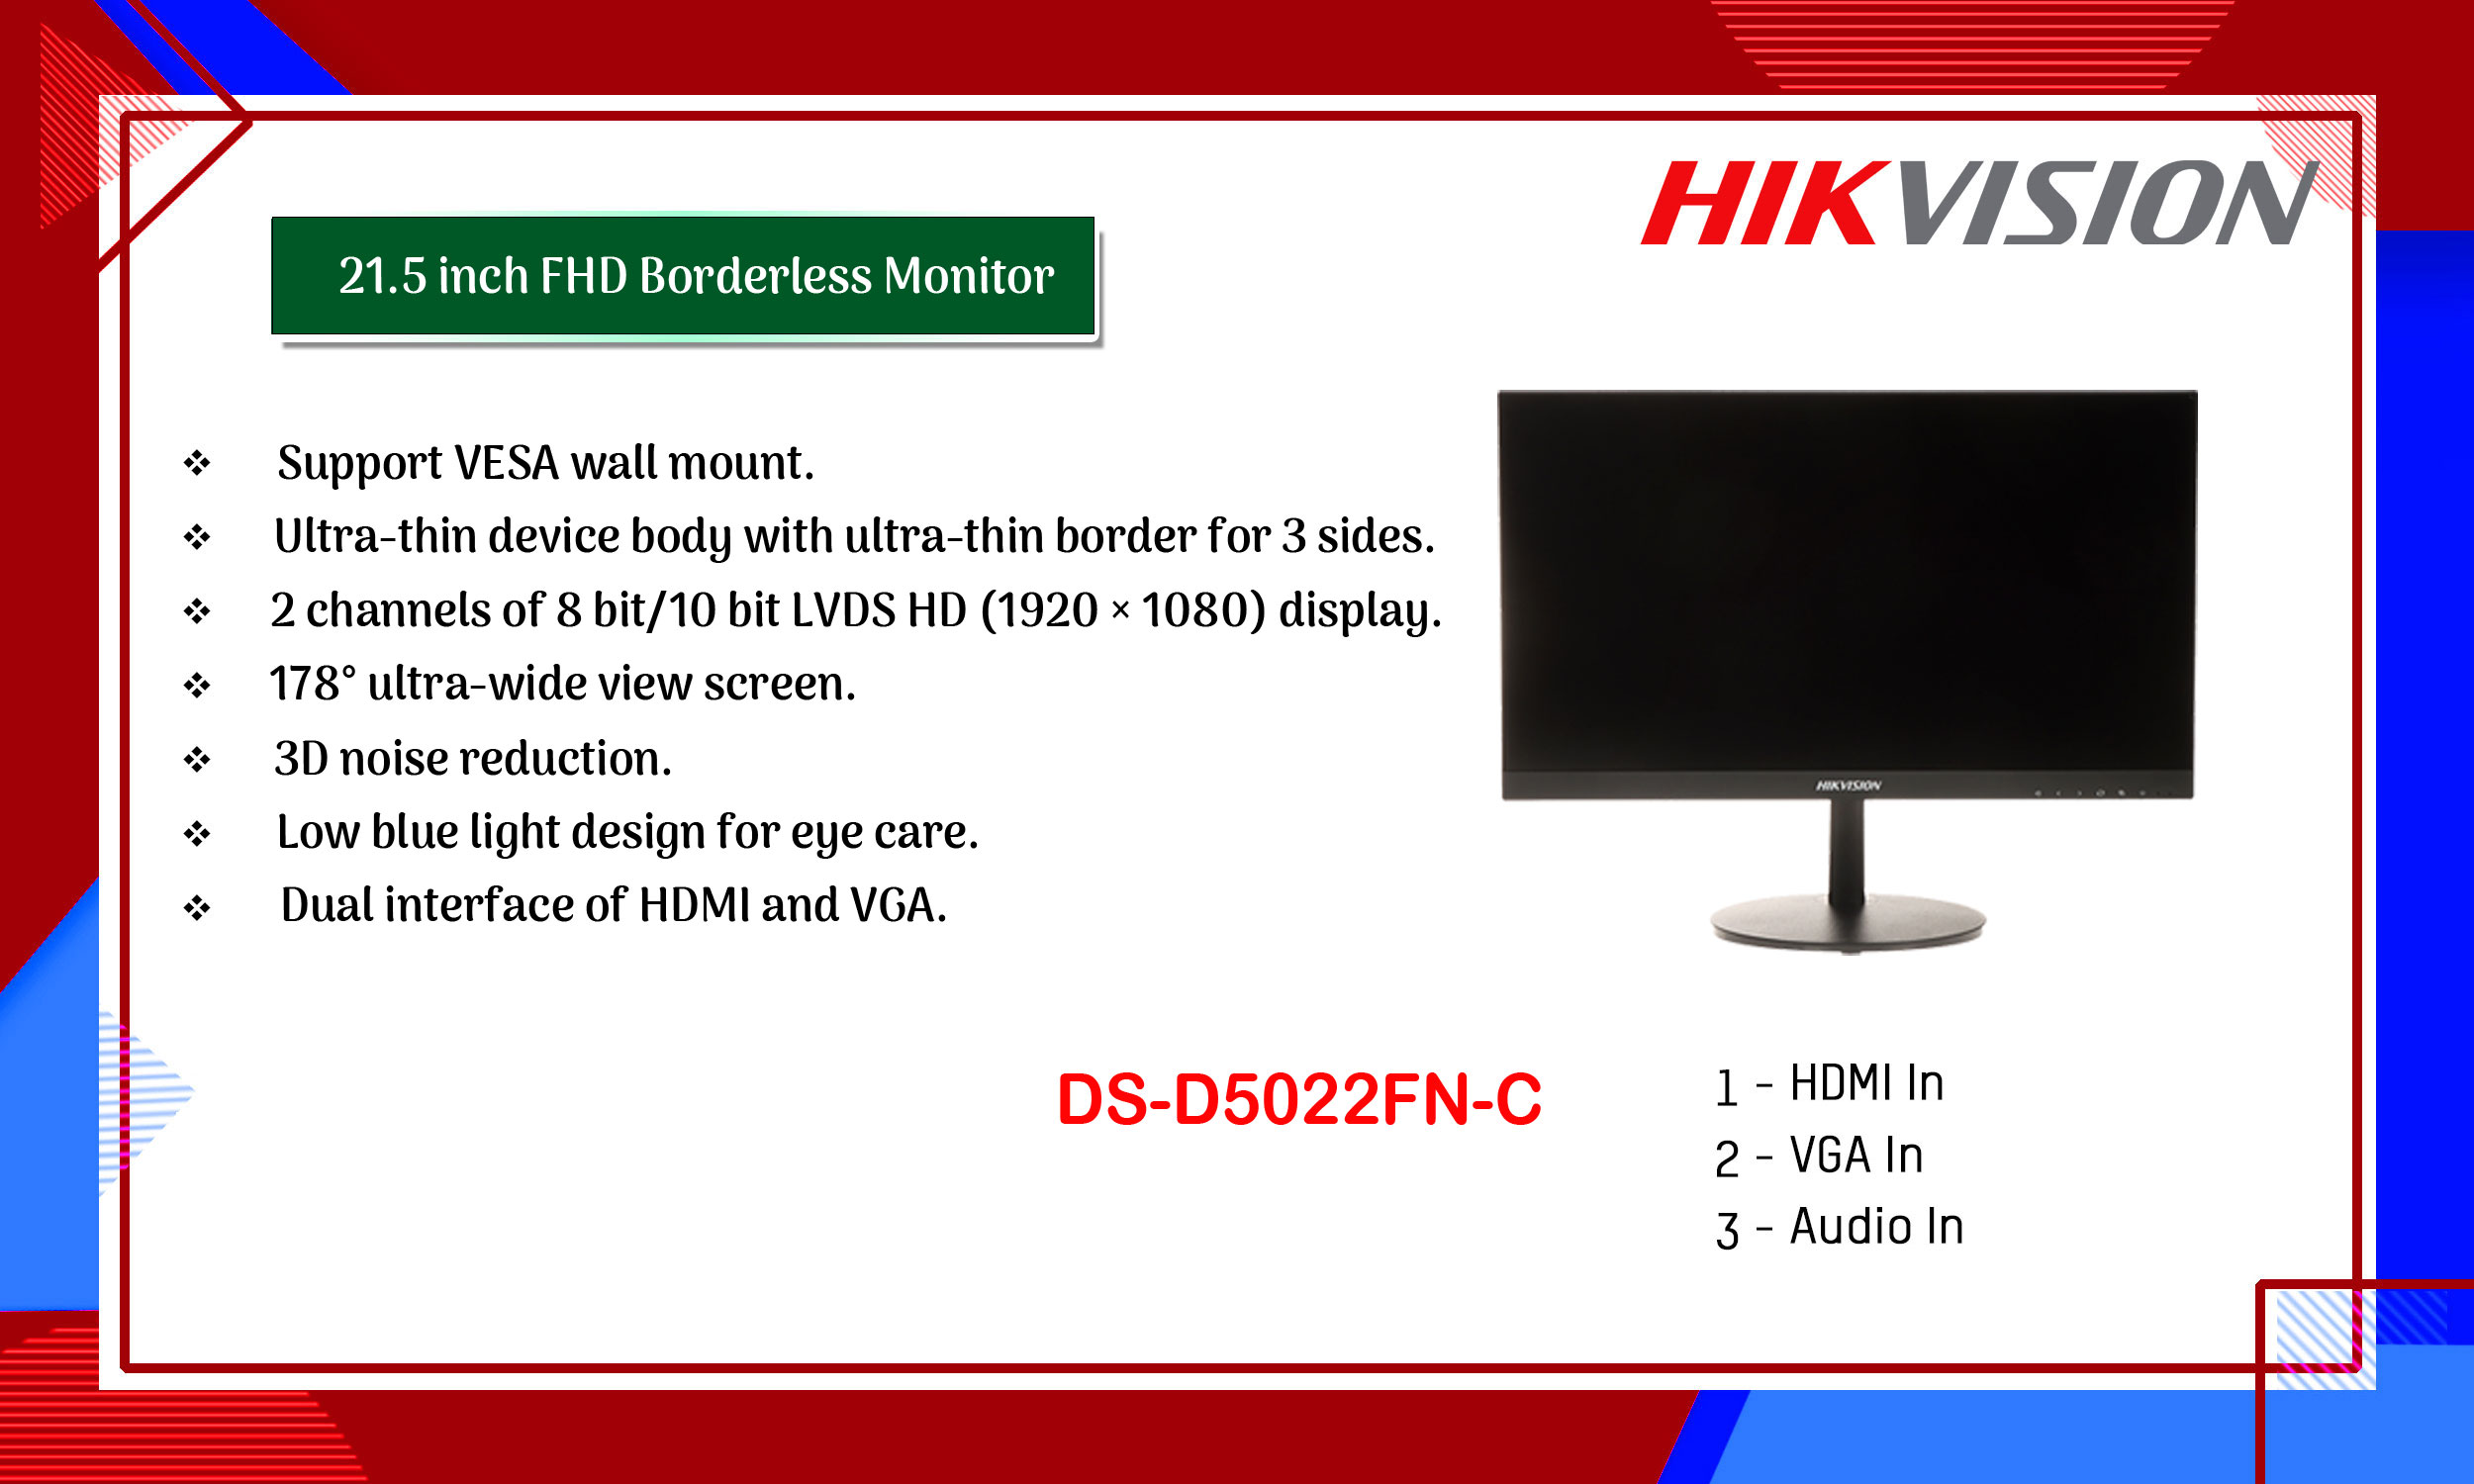 Ecran LED 32'' HD 1080p HDMI VGA BNC VESA DS-D5032FC-A DIXYS HIK